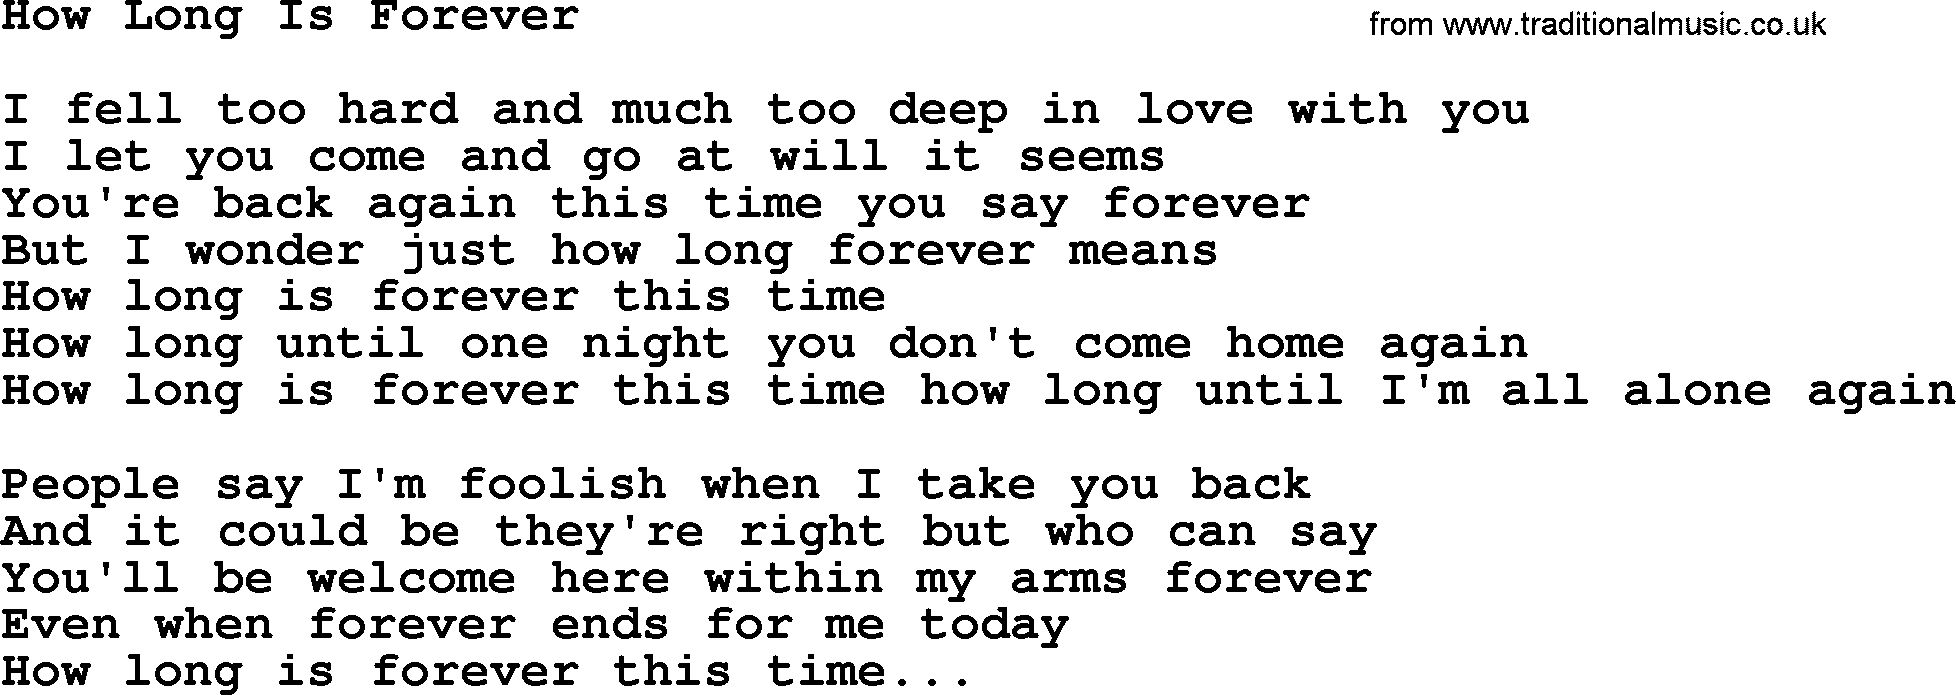 Willie Nelson song: How Long Is Forever lyrics